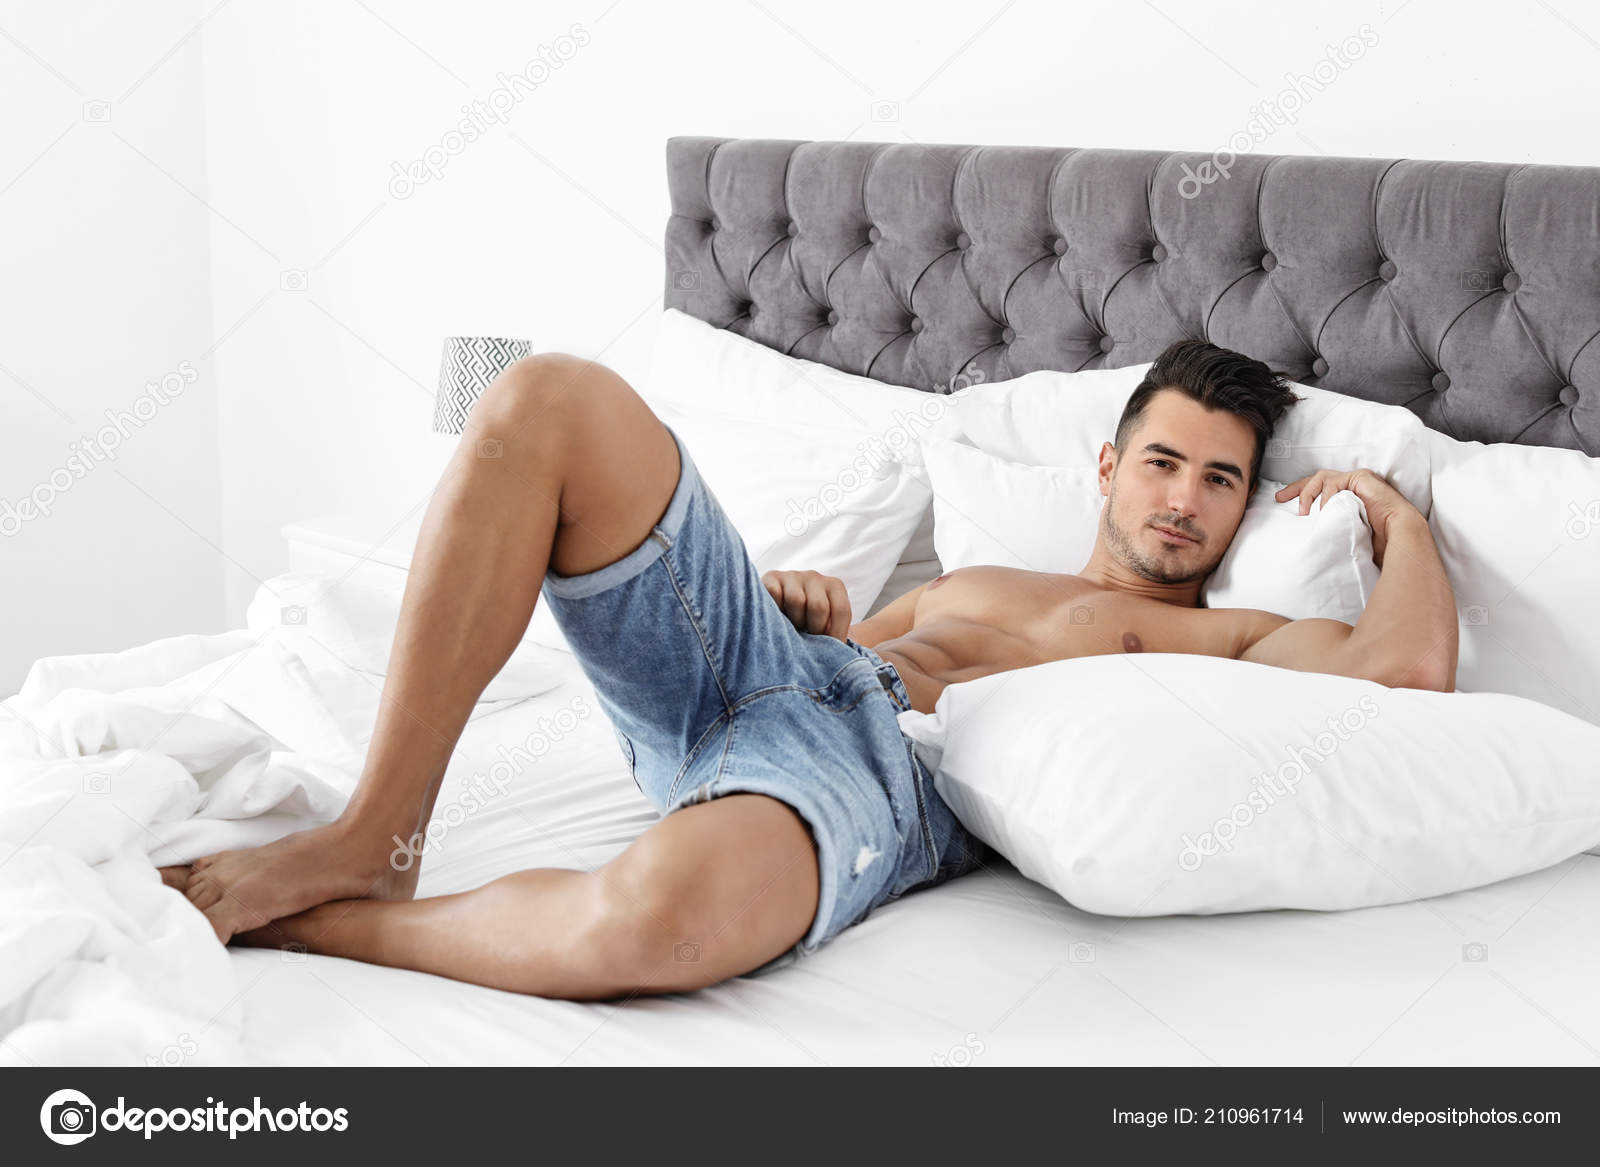 Лёжа в кровате зрелый мужик ласкает свой хер фото